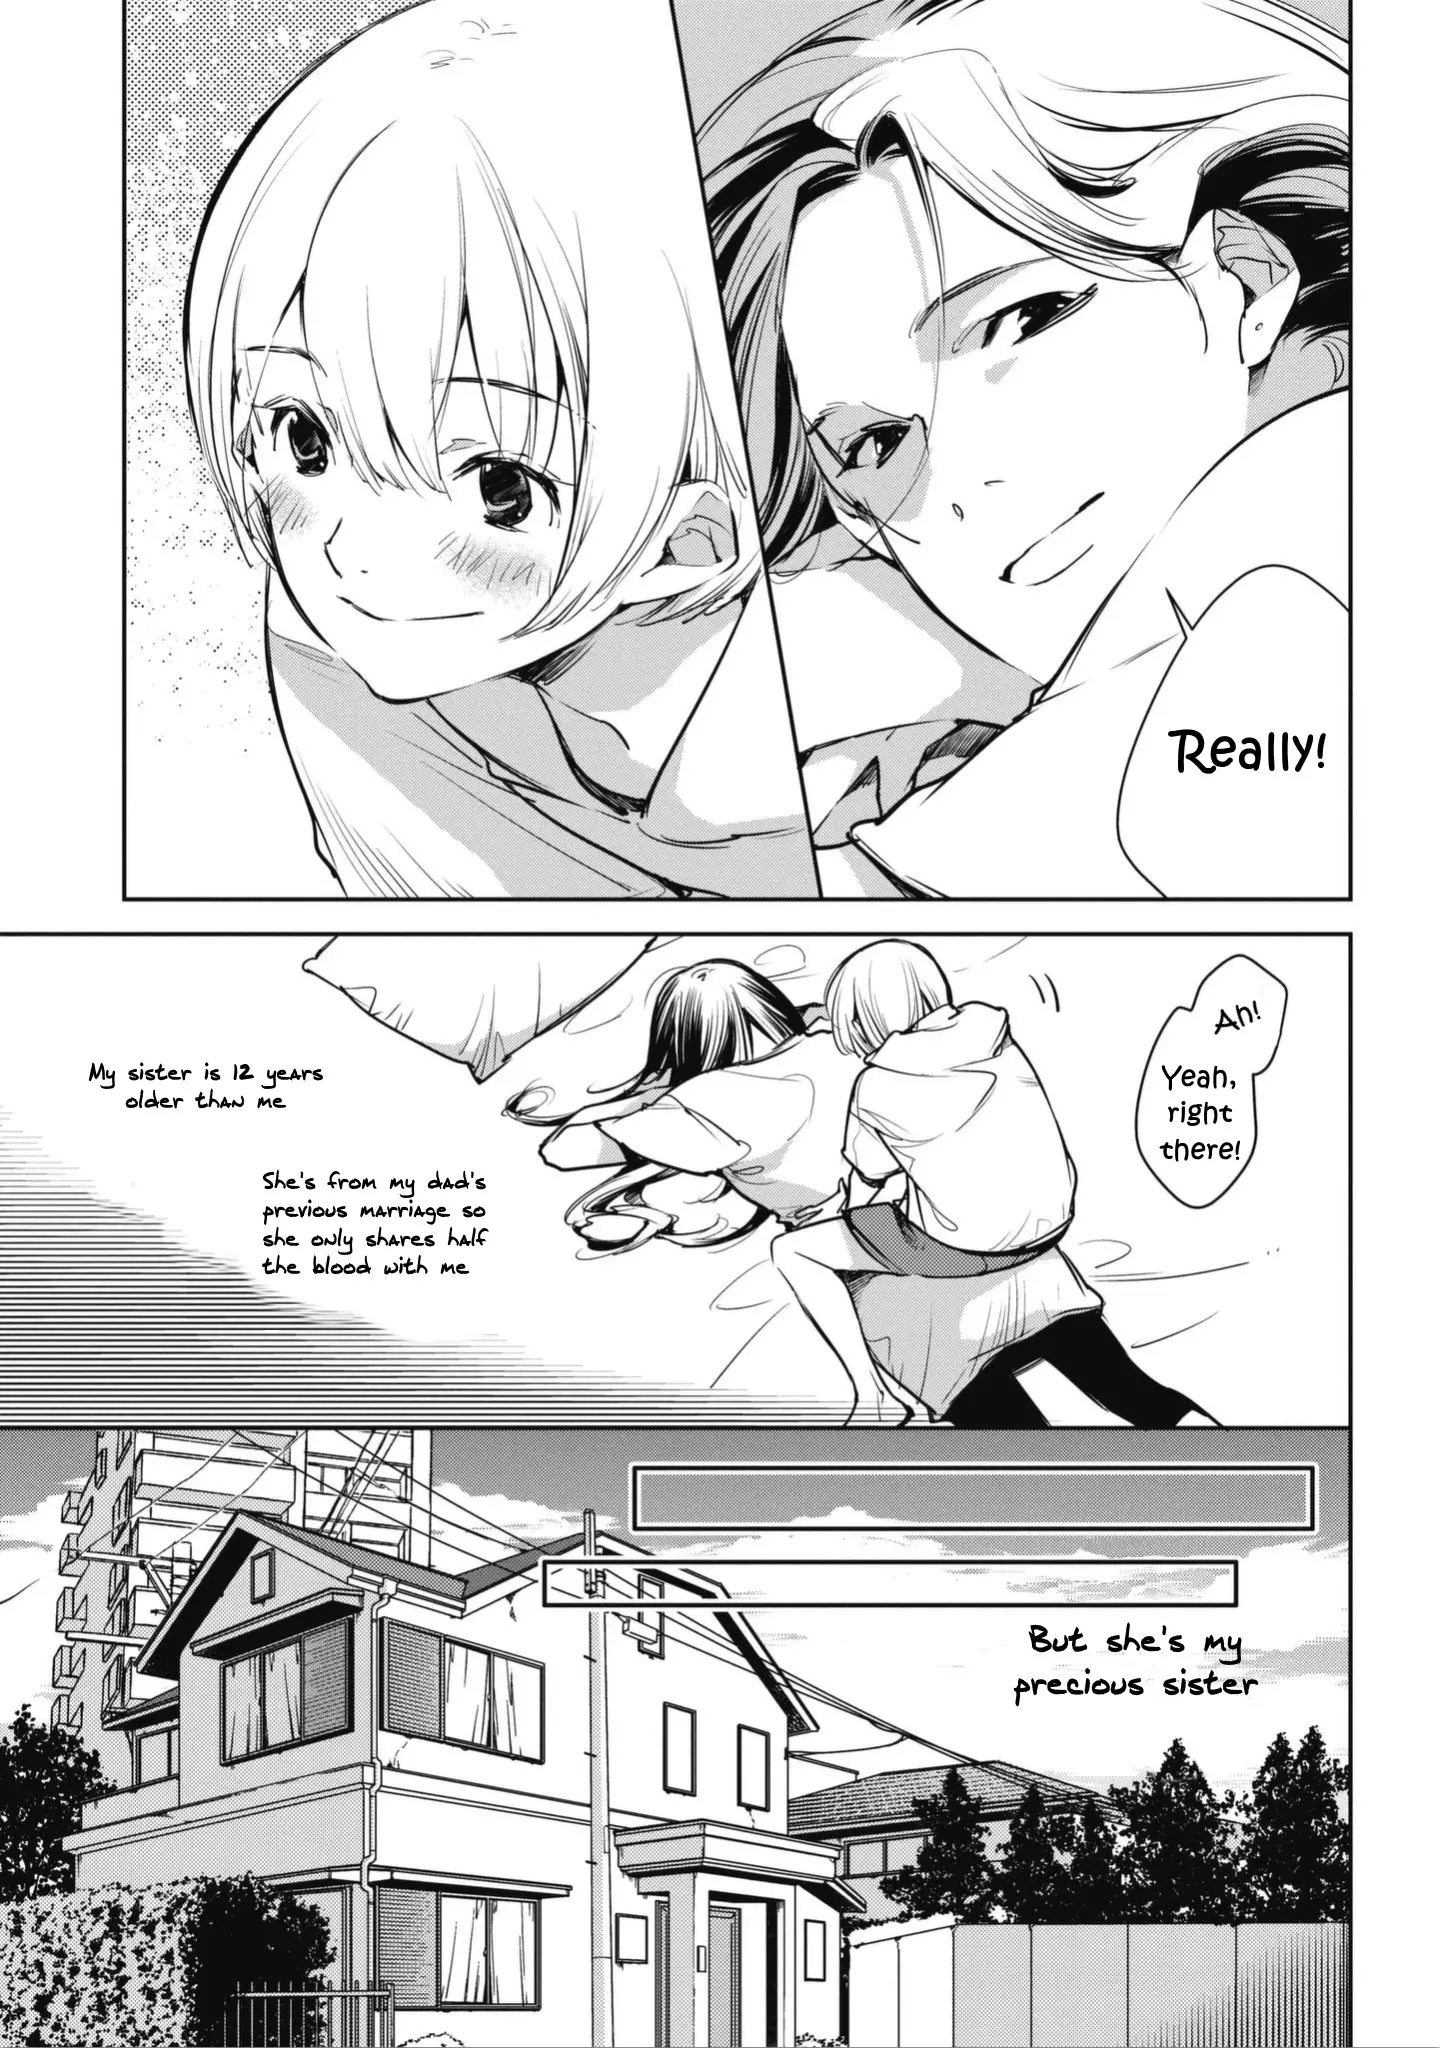 Okashiratsuki - 1 page 13